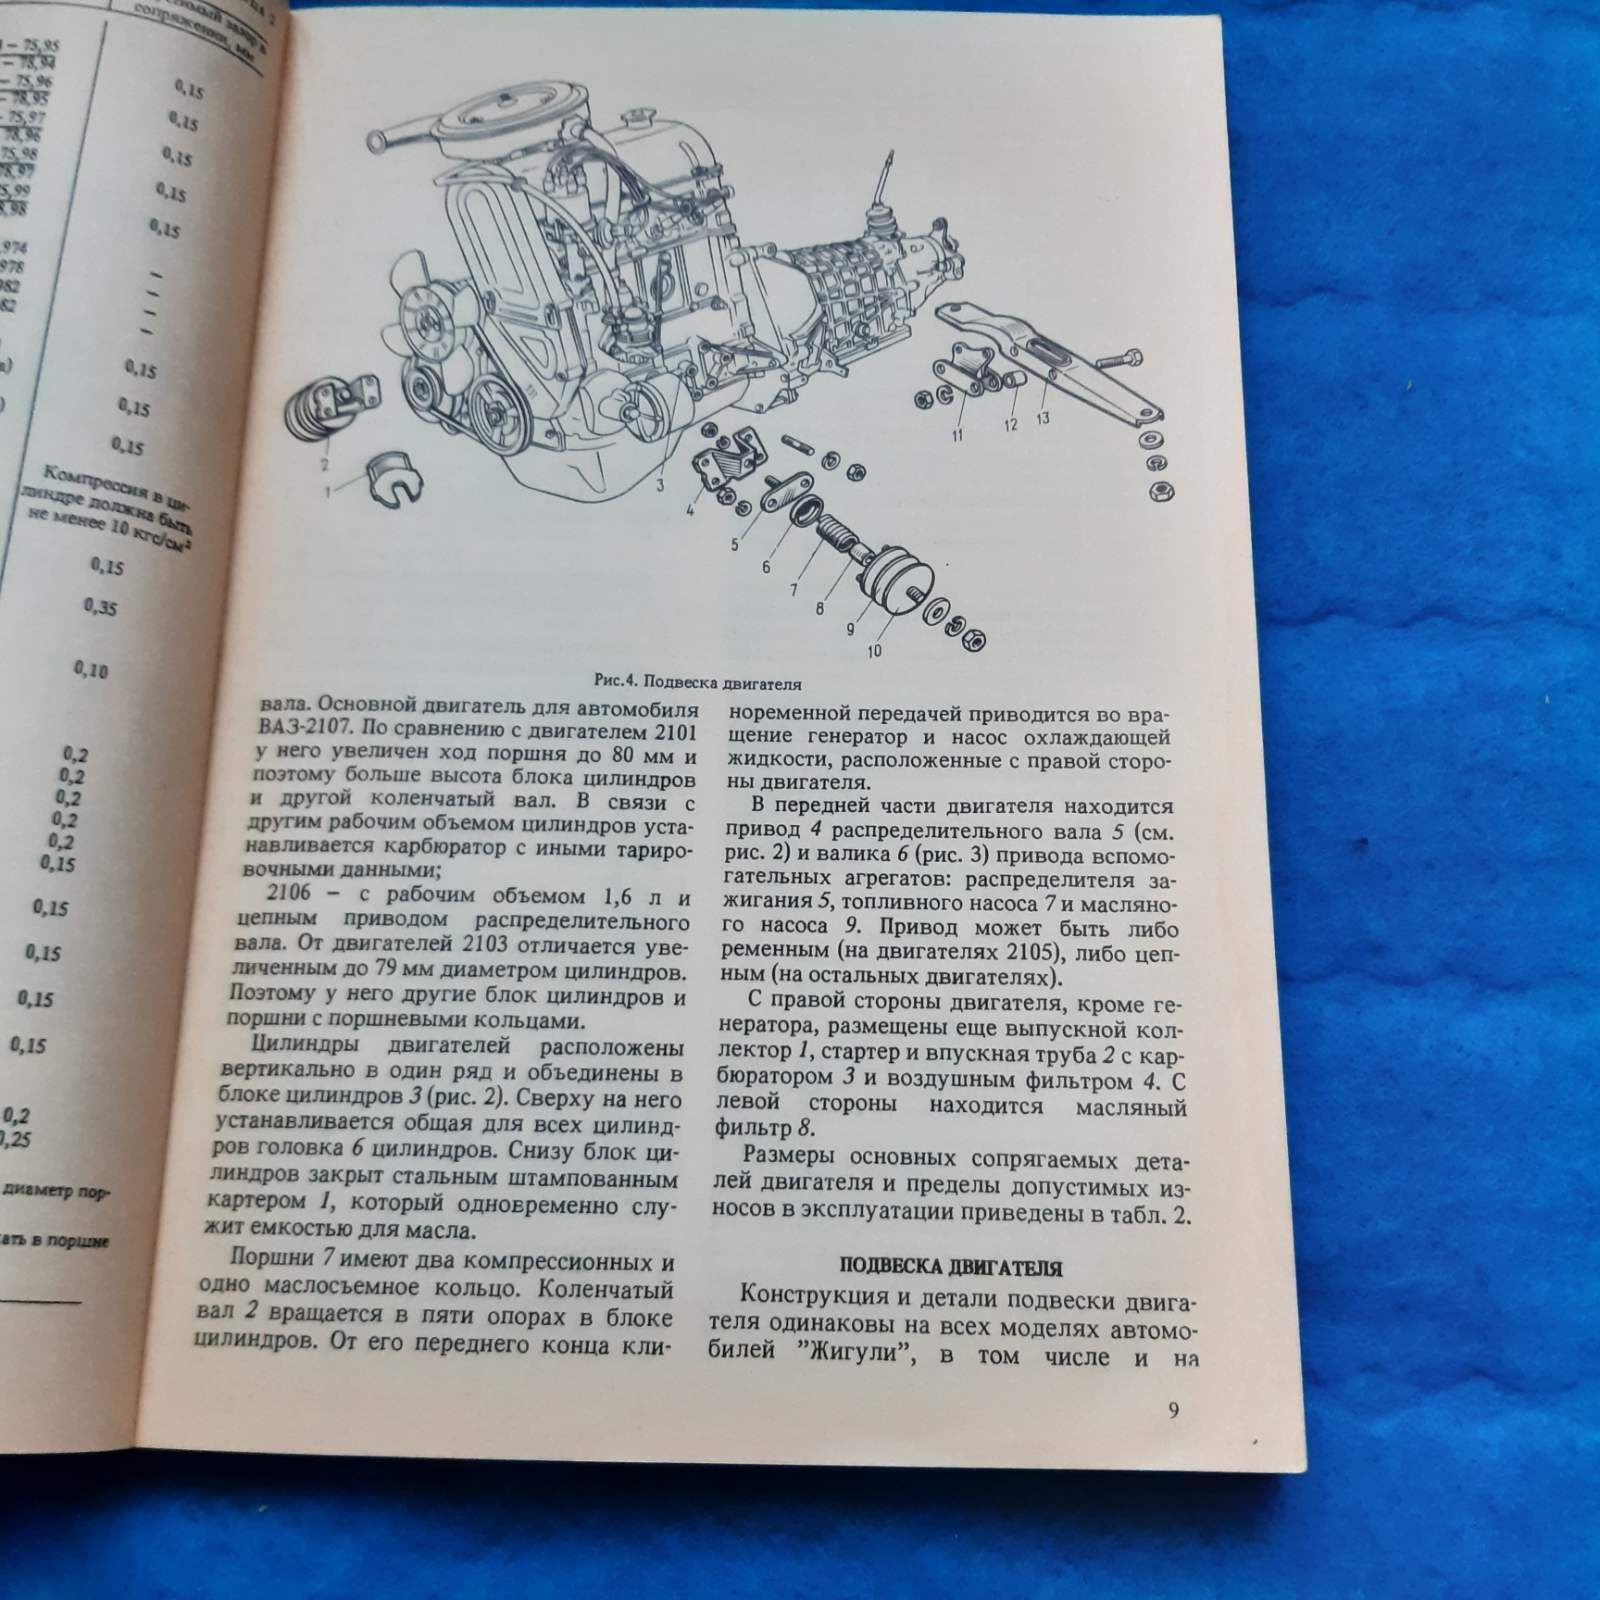 Ретро авто книга "Автомобили Жигули ВАЗ-2104, ВАЗ-2105, ВАЗ-2107"